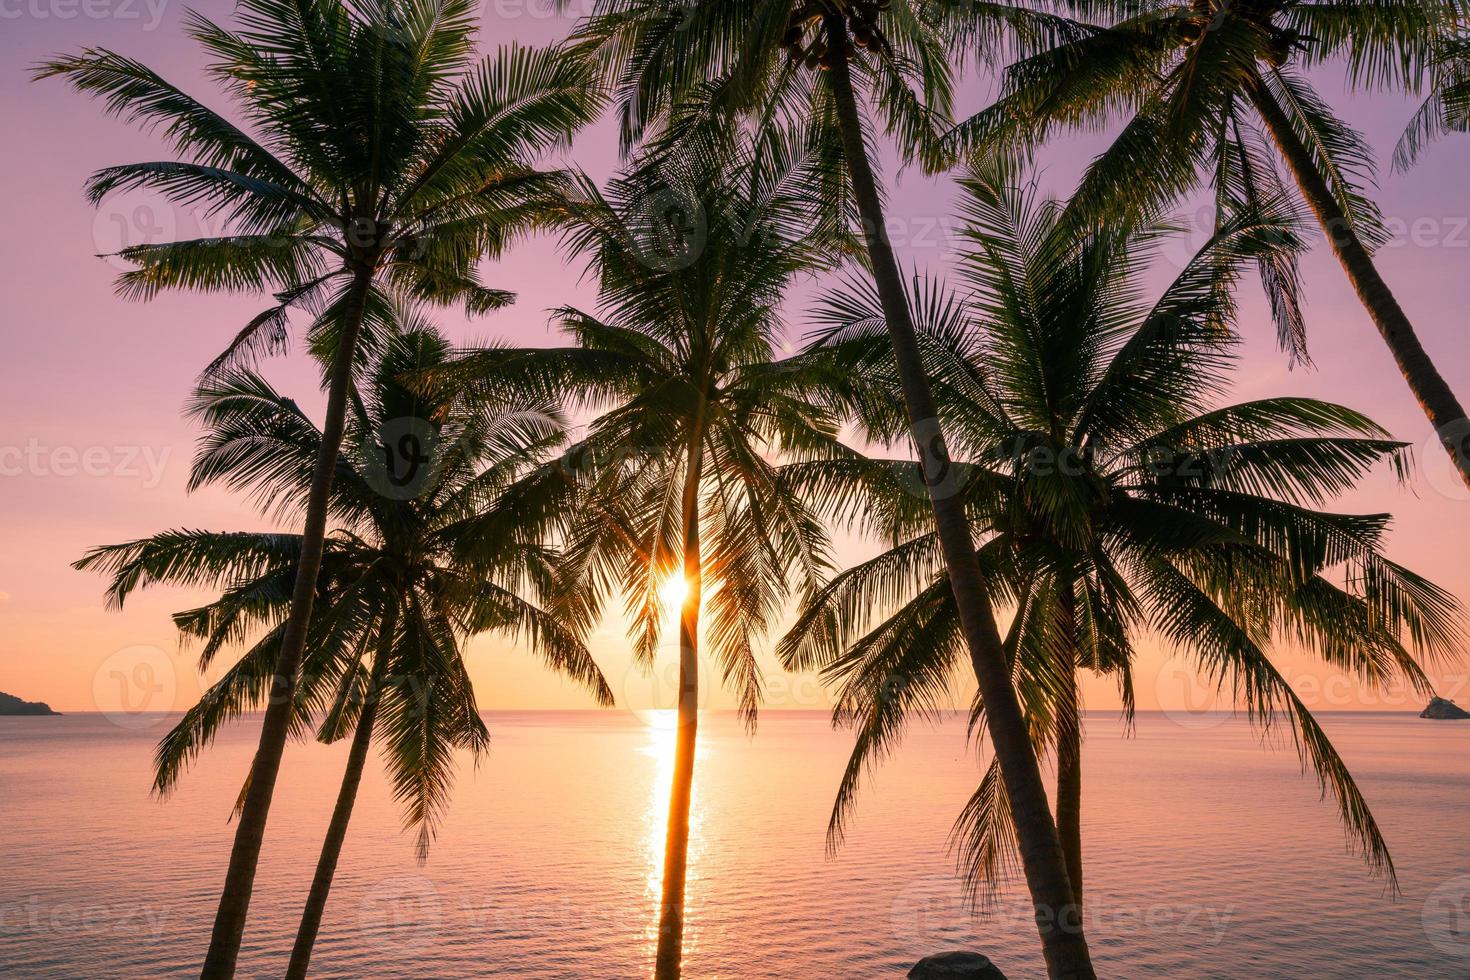 siluett kokospalmer vid solnedgång eller soluppgång himmel över havet fantastiskt ljus natur färgstarkt landskap vackert ljus natur himmel och moln foto